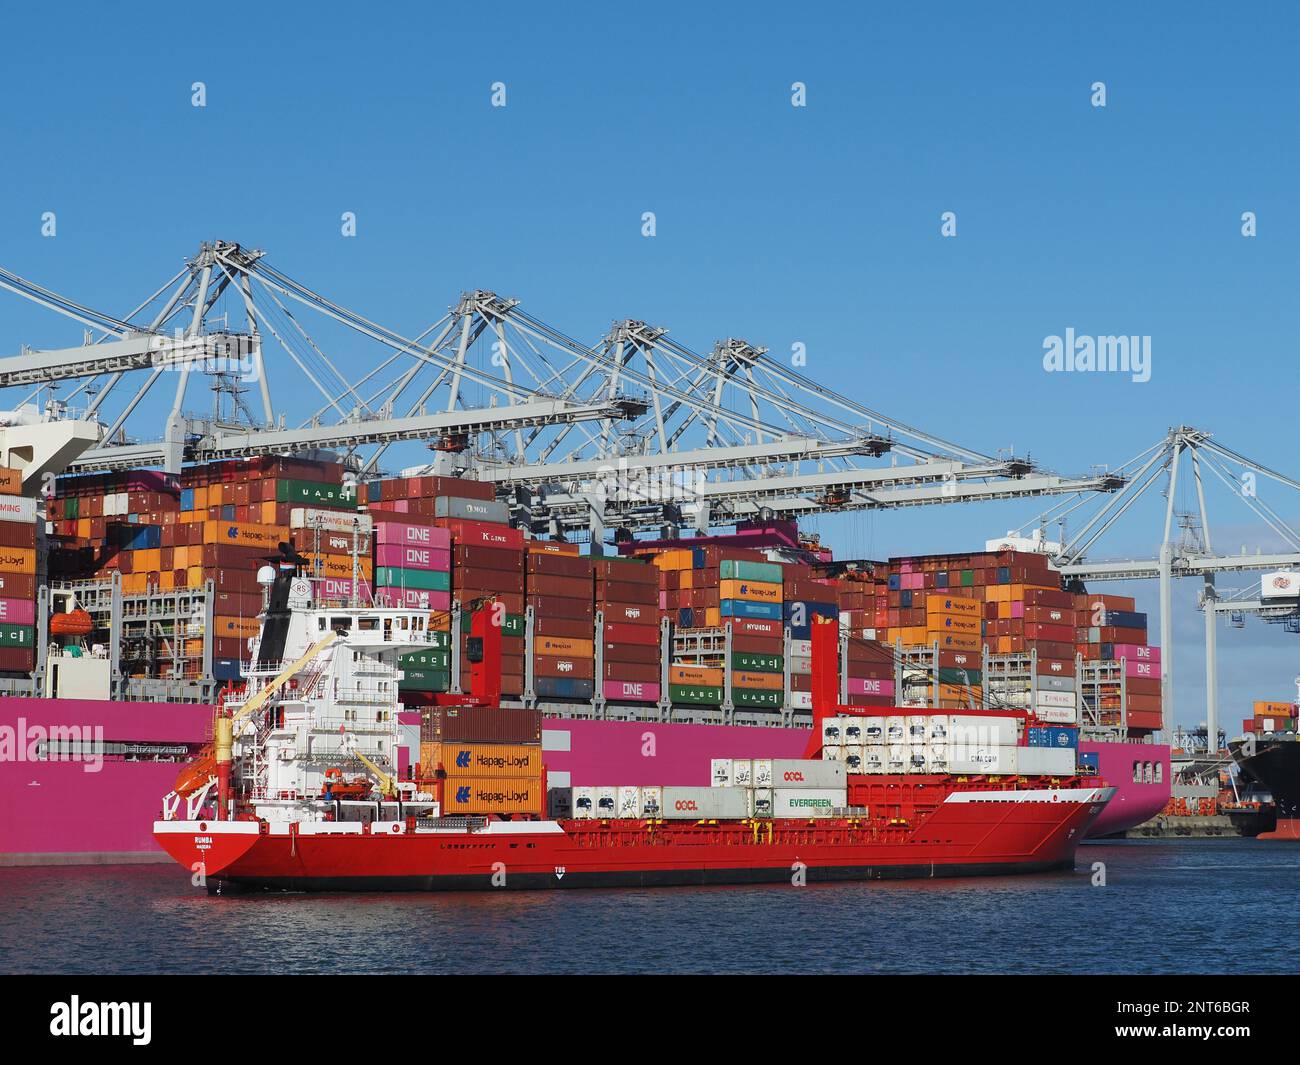 Großes rosa Containerschiff vom japanischen ONE Ocean Network Express mit einem kleinen Containerschiff daneben im Hafen von Rotterdam, Niederlande Stockfoto